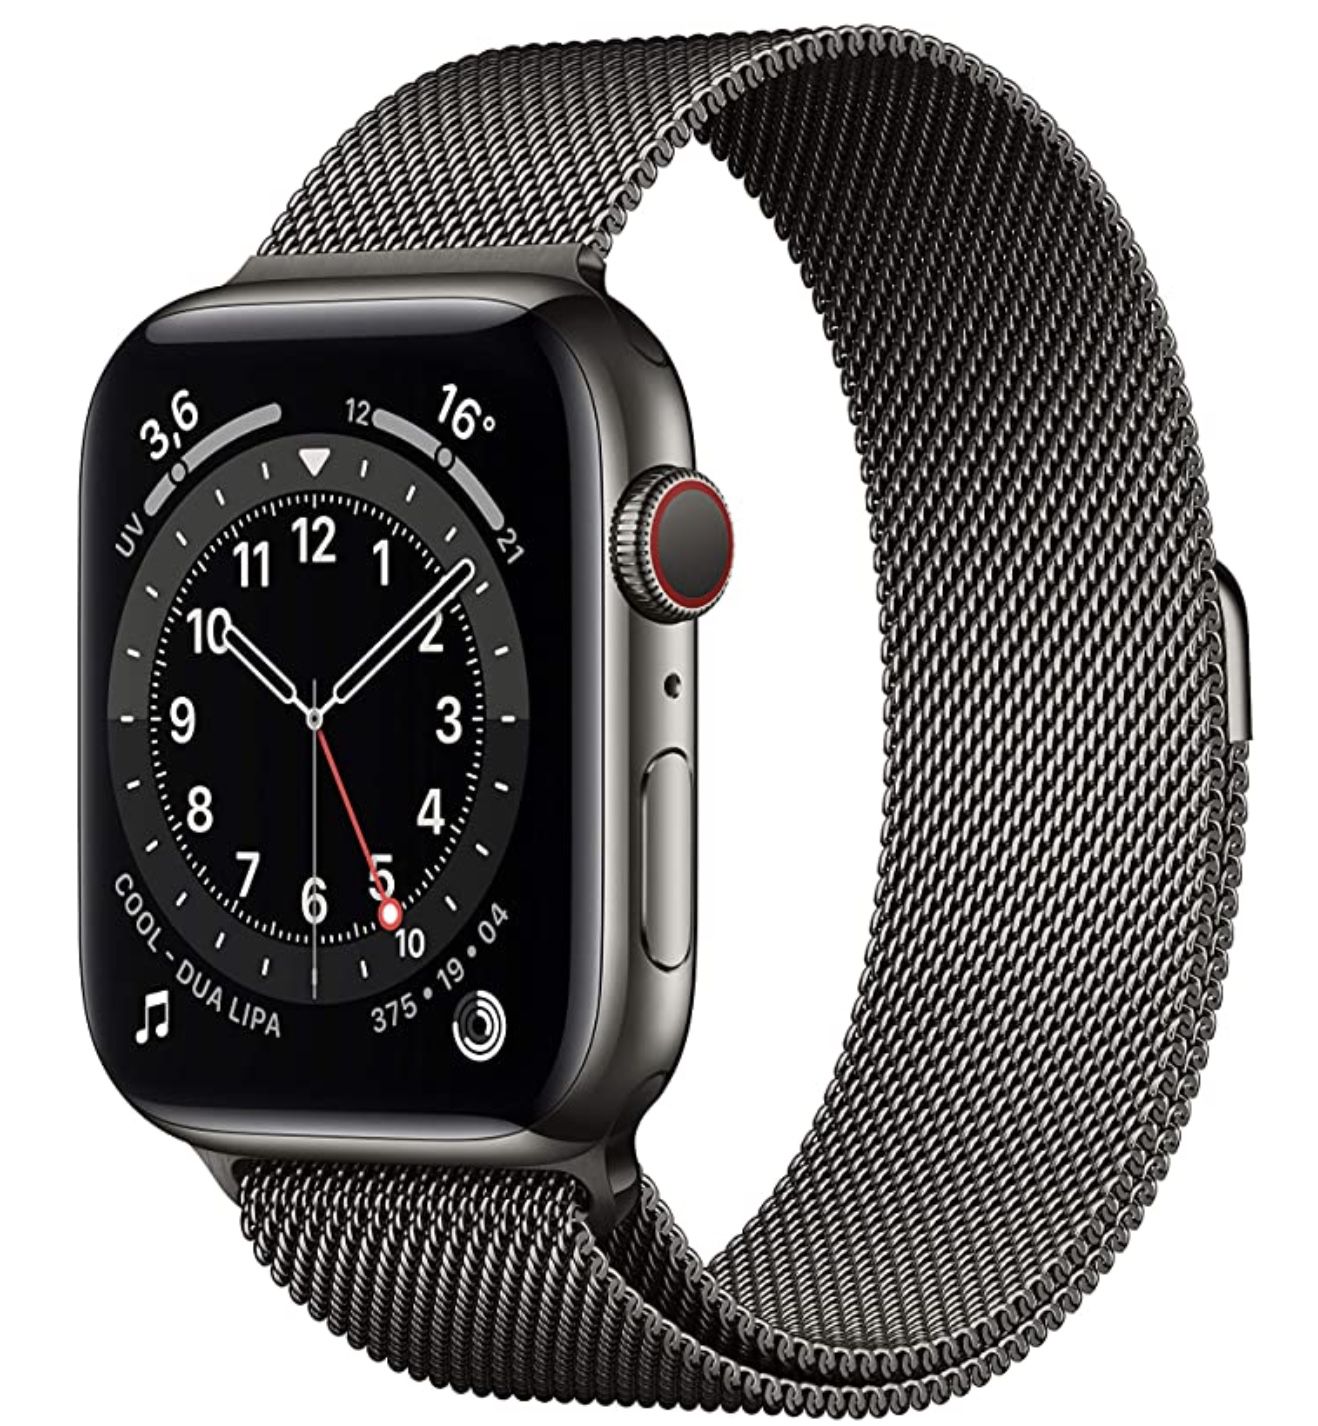 Apple Watch Series 6 LTE 44mm Edelstahlgehäuse mit Milanaise Armband für 570,33€ (statt 644€)